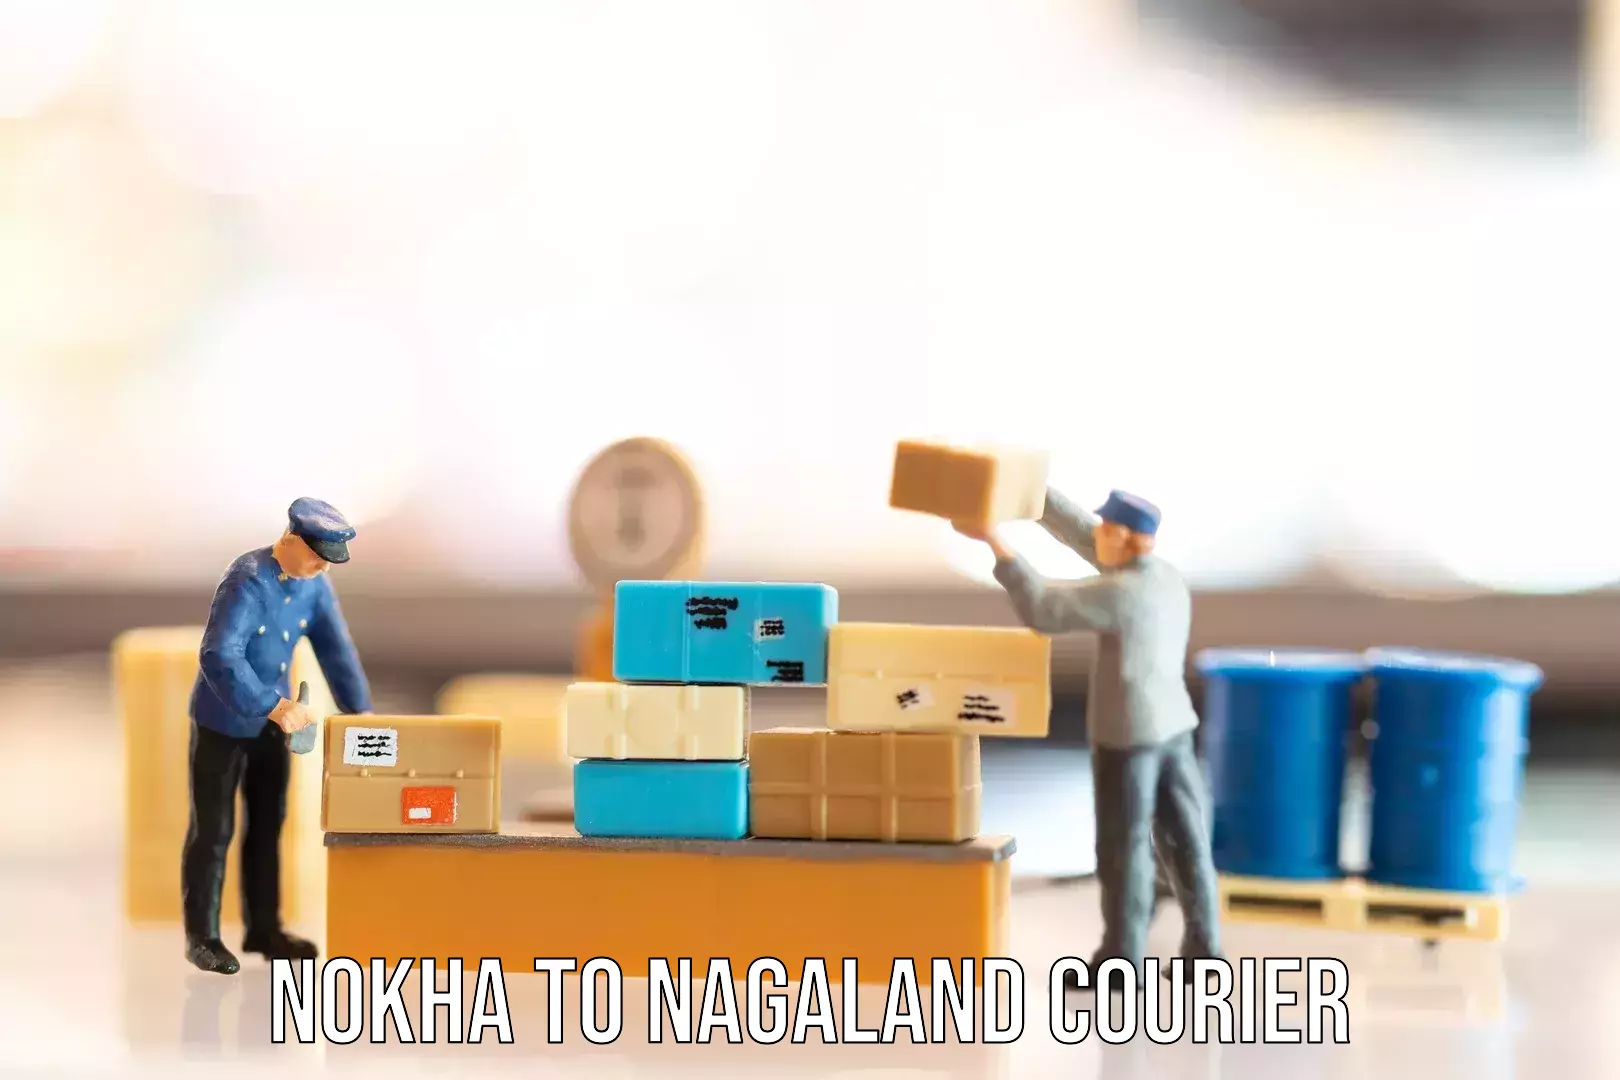 Luggage transport service Nokha to Nagaland